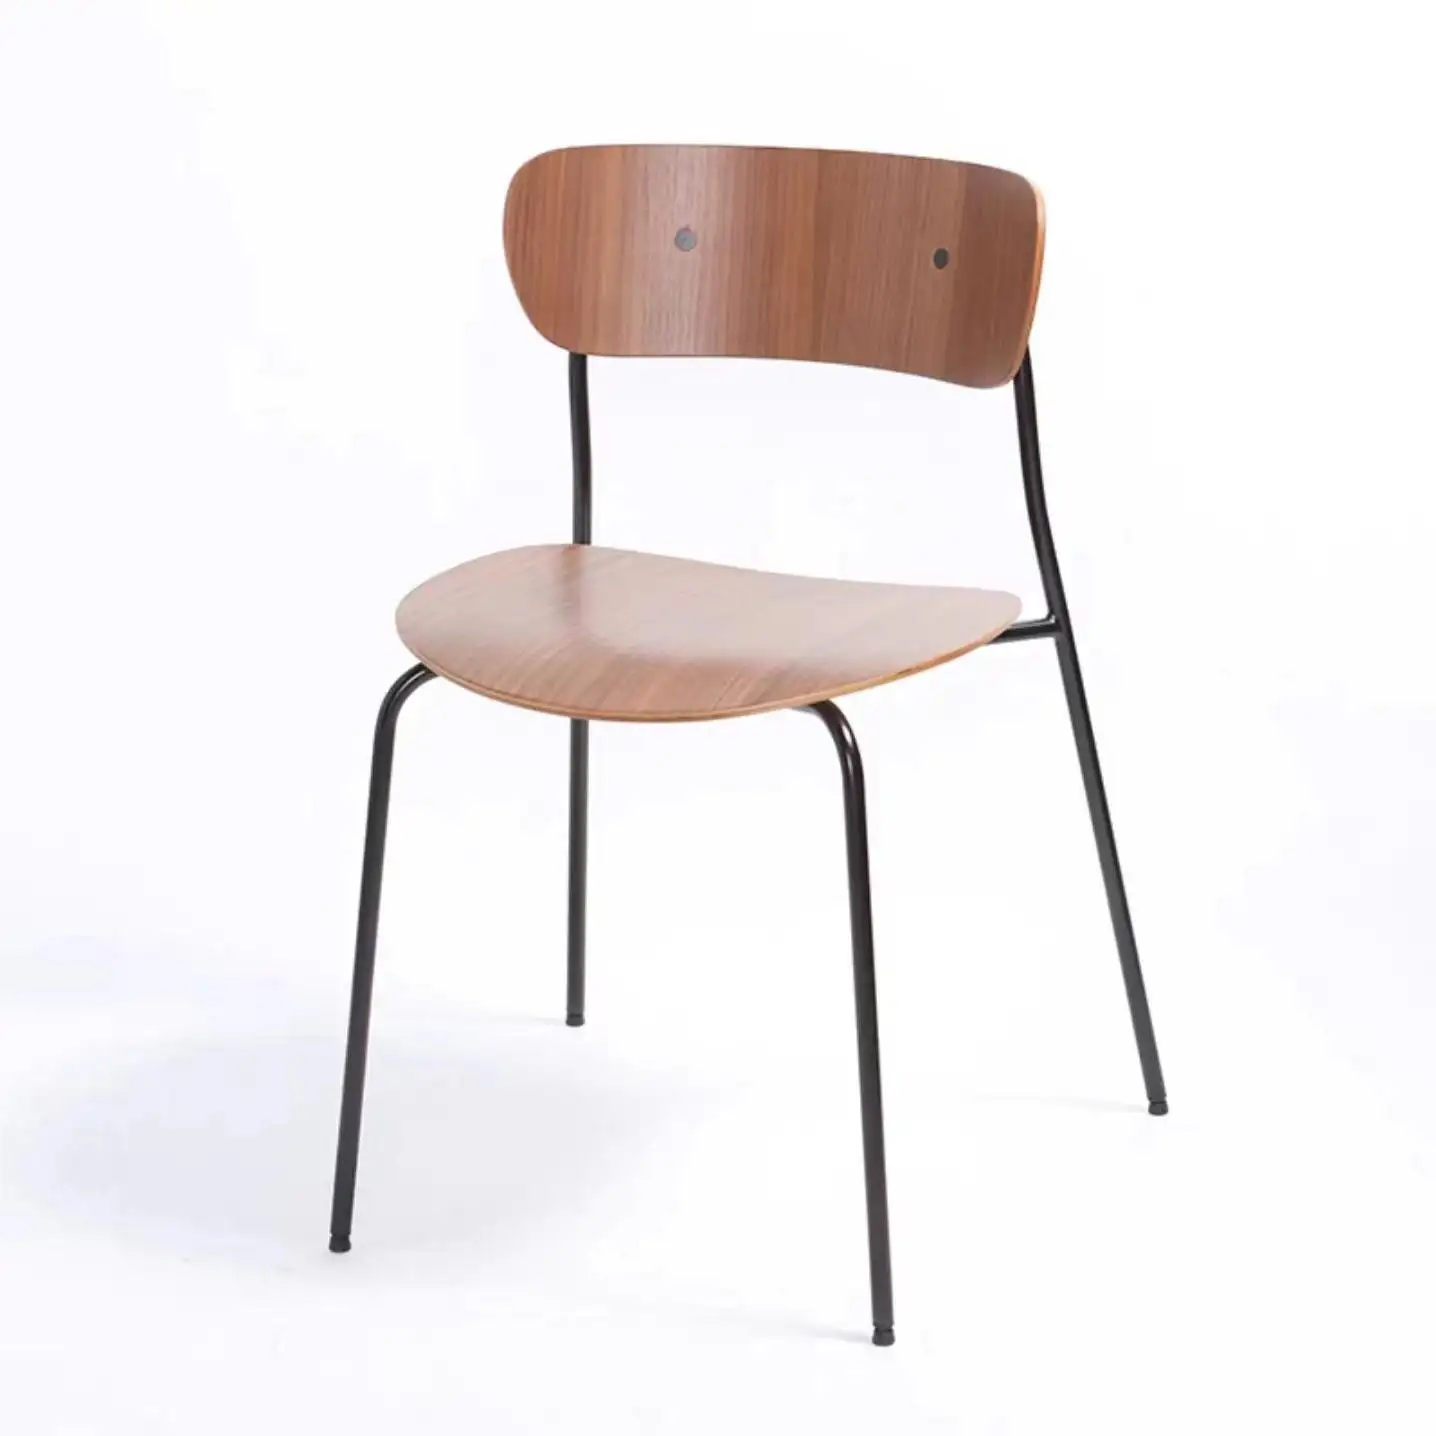 Sedia da pranzo in legno massello impilabile e resistente caffetteria dal Design moderno